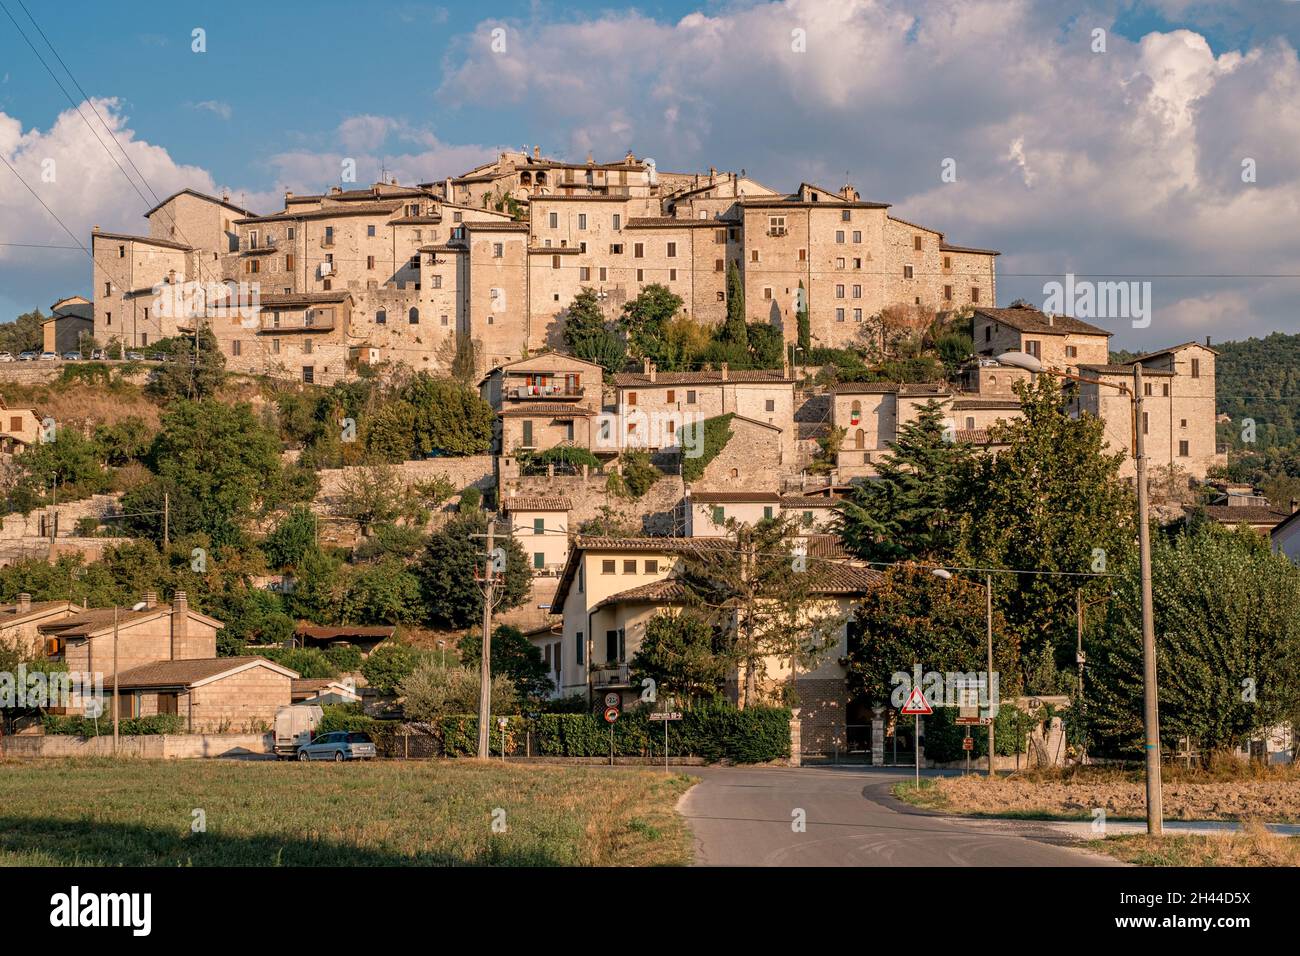 Casteldilago, borgo medievale della provincia di Terni, Umbria, Italia Foto Stock